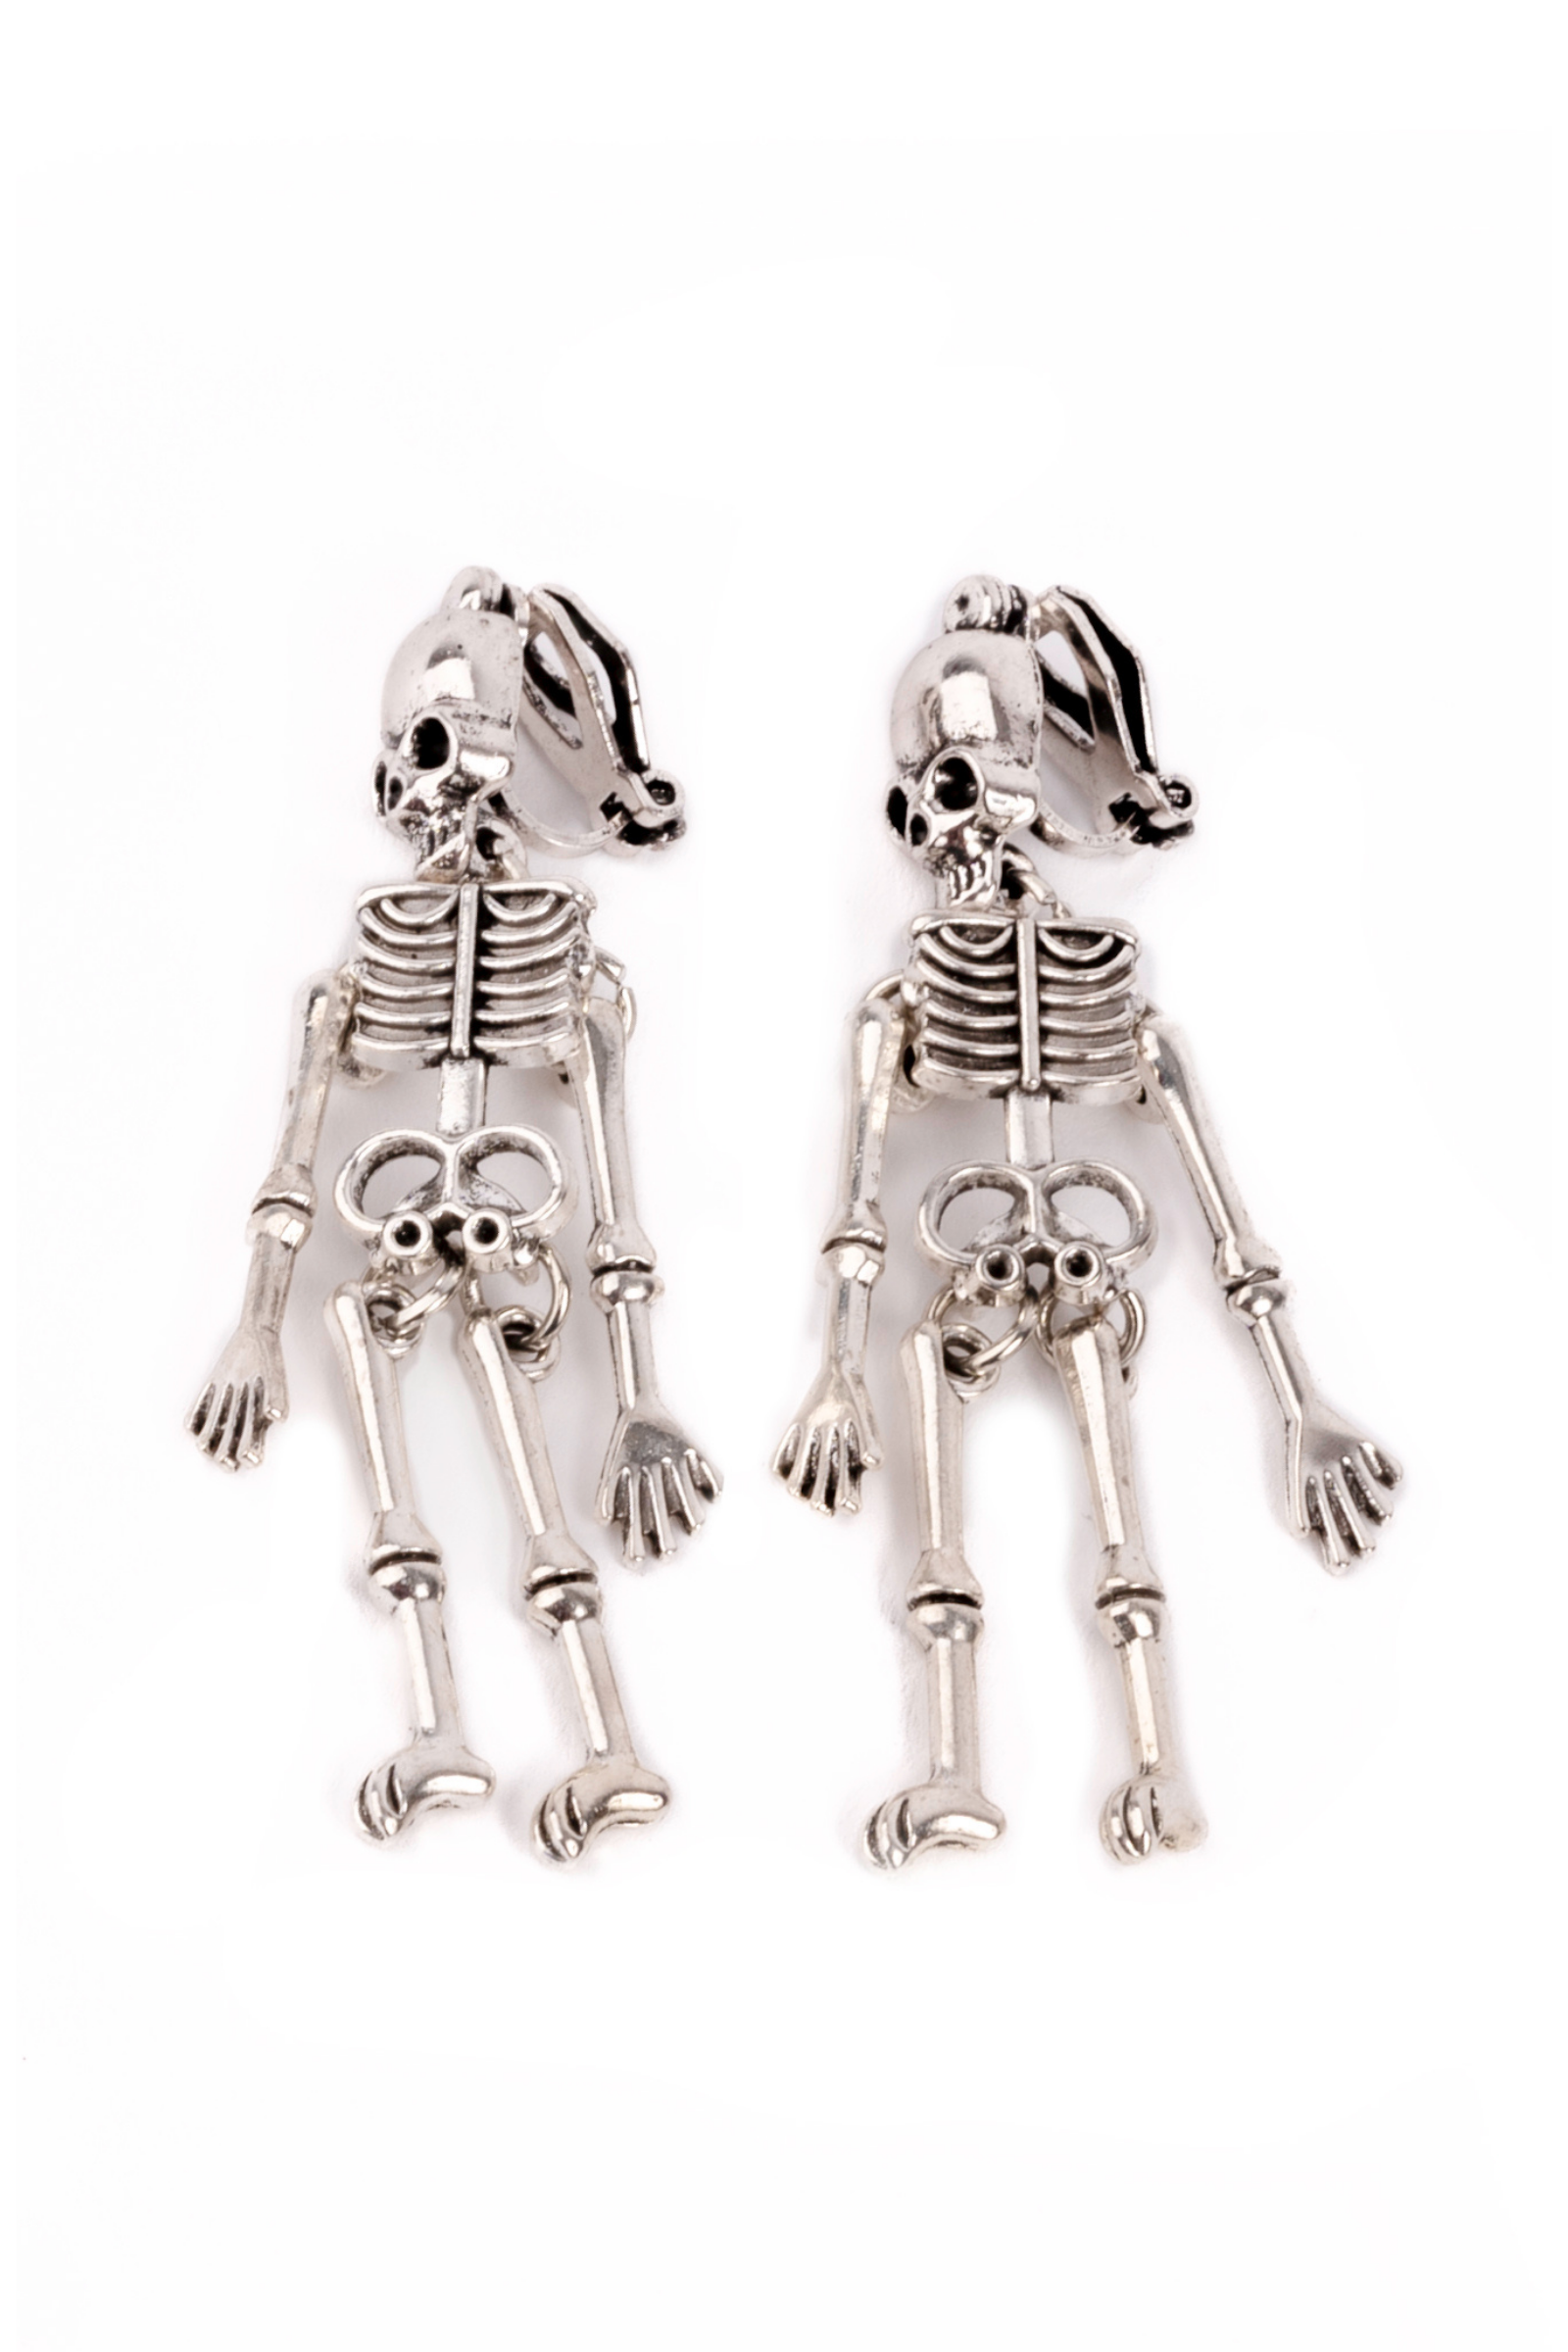 Spooky Scary Skeleton Clip On Earrings